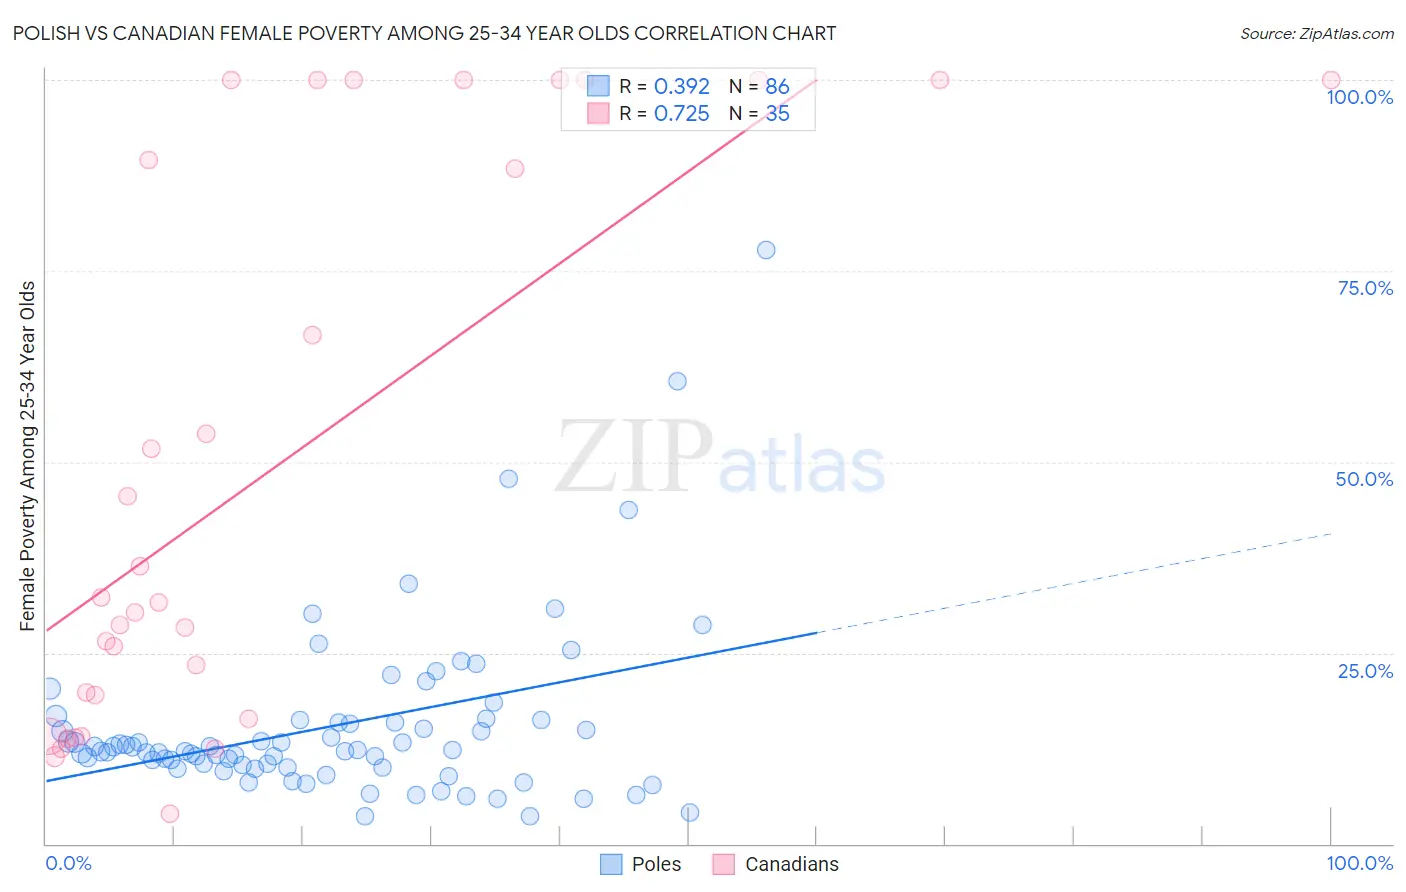 Polish vs Canadian Female Poverty Among 25-34 Year Olds